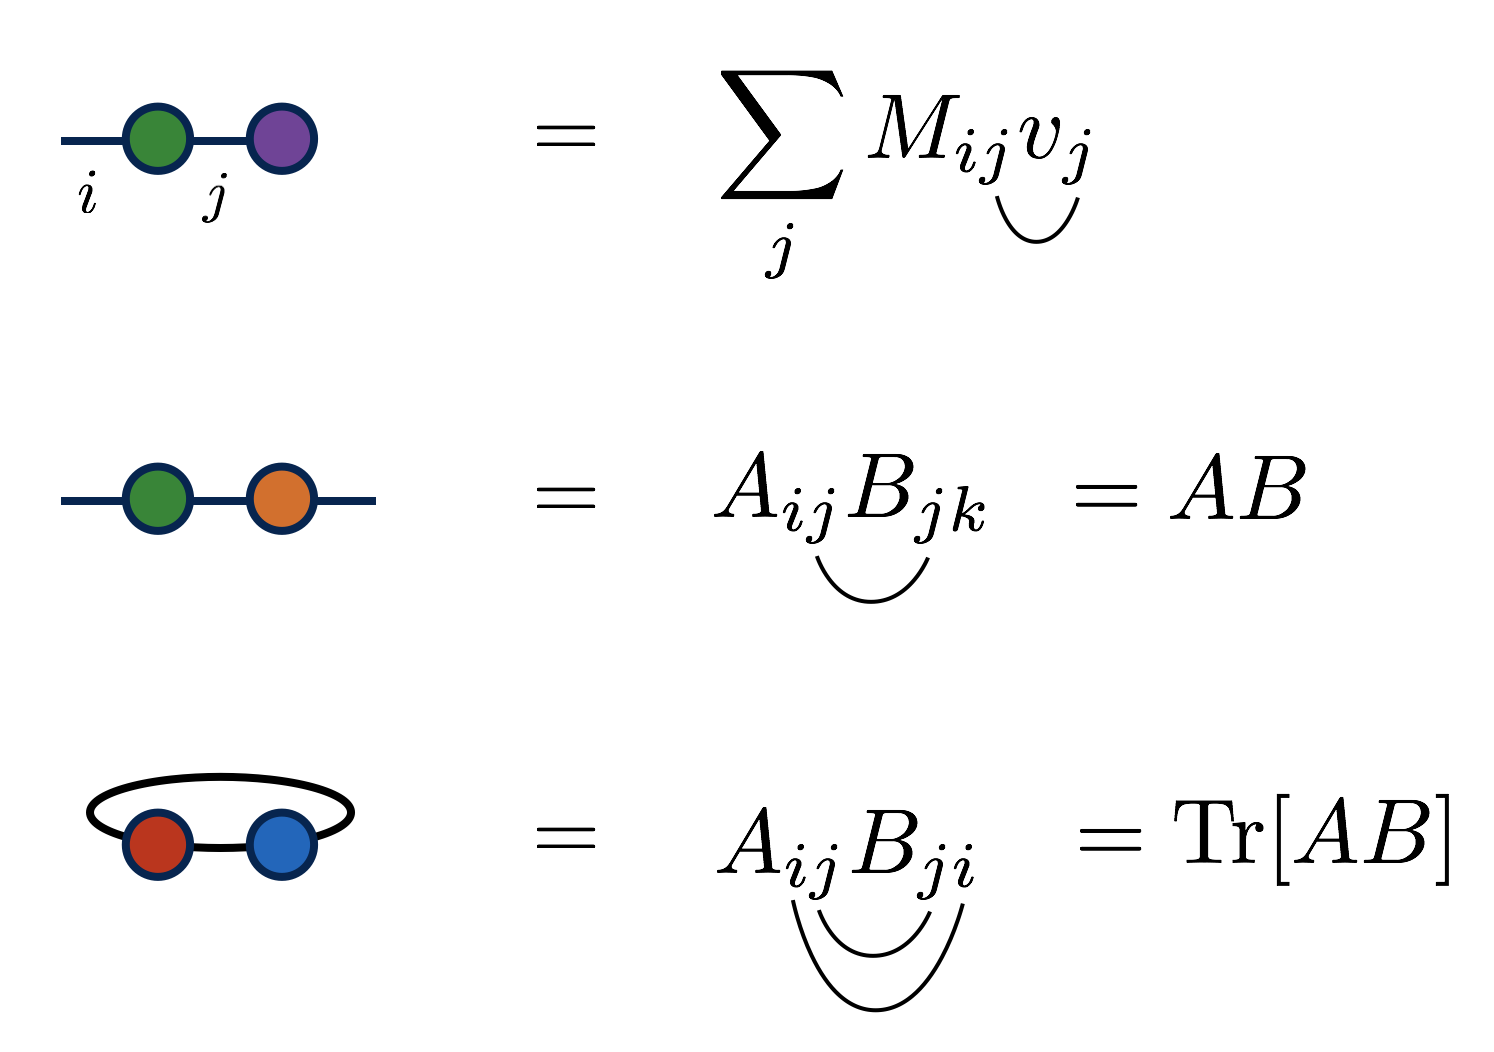 asymptotic notation图片